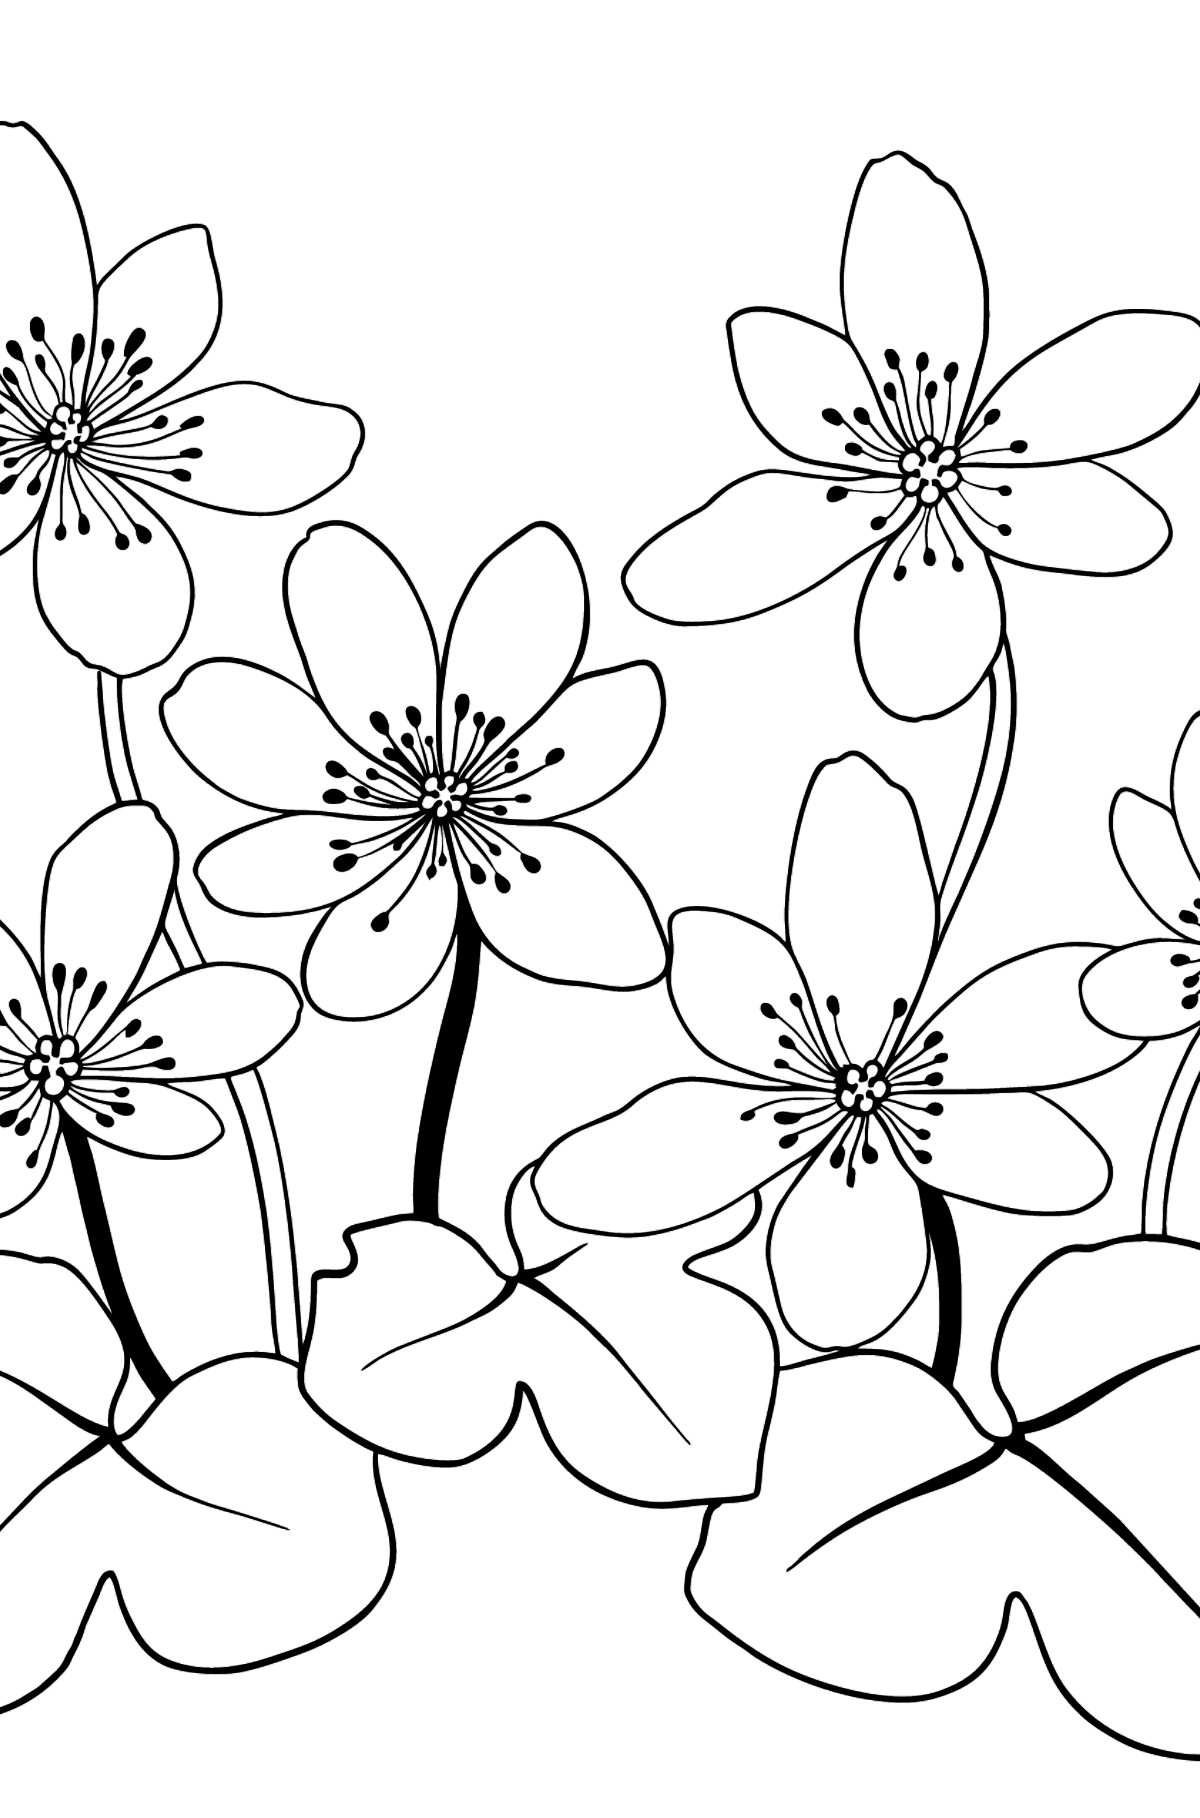 Раскраска цветы - печеночница - Картинки для Детей